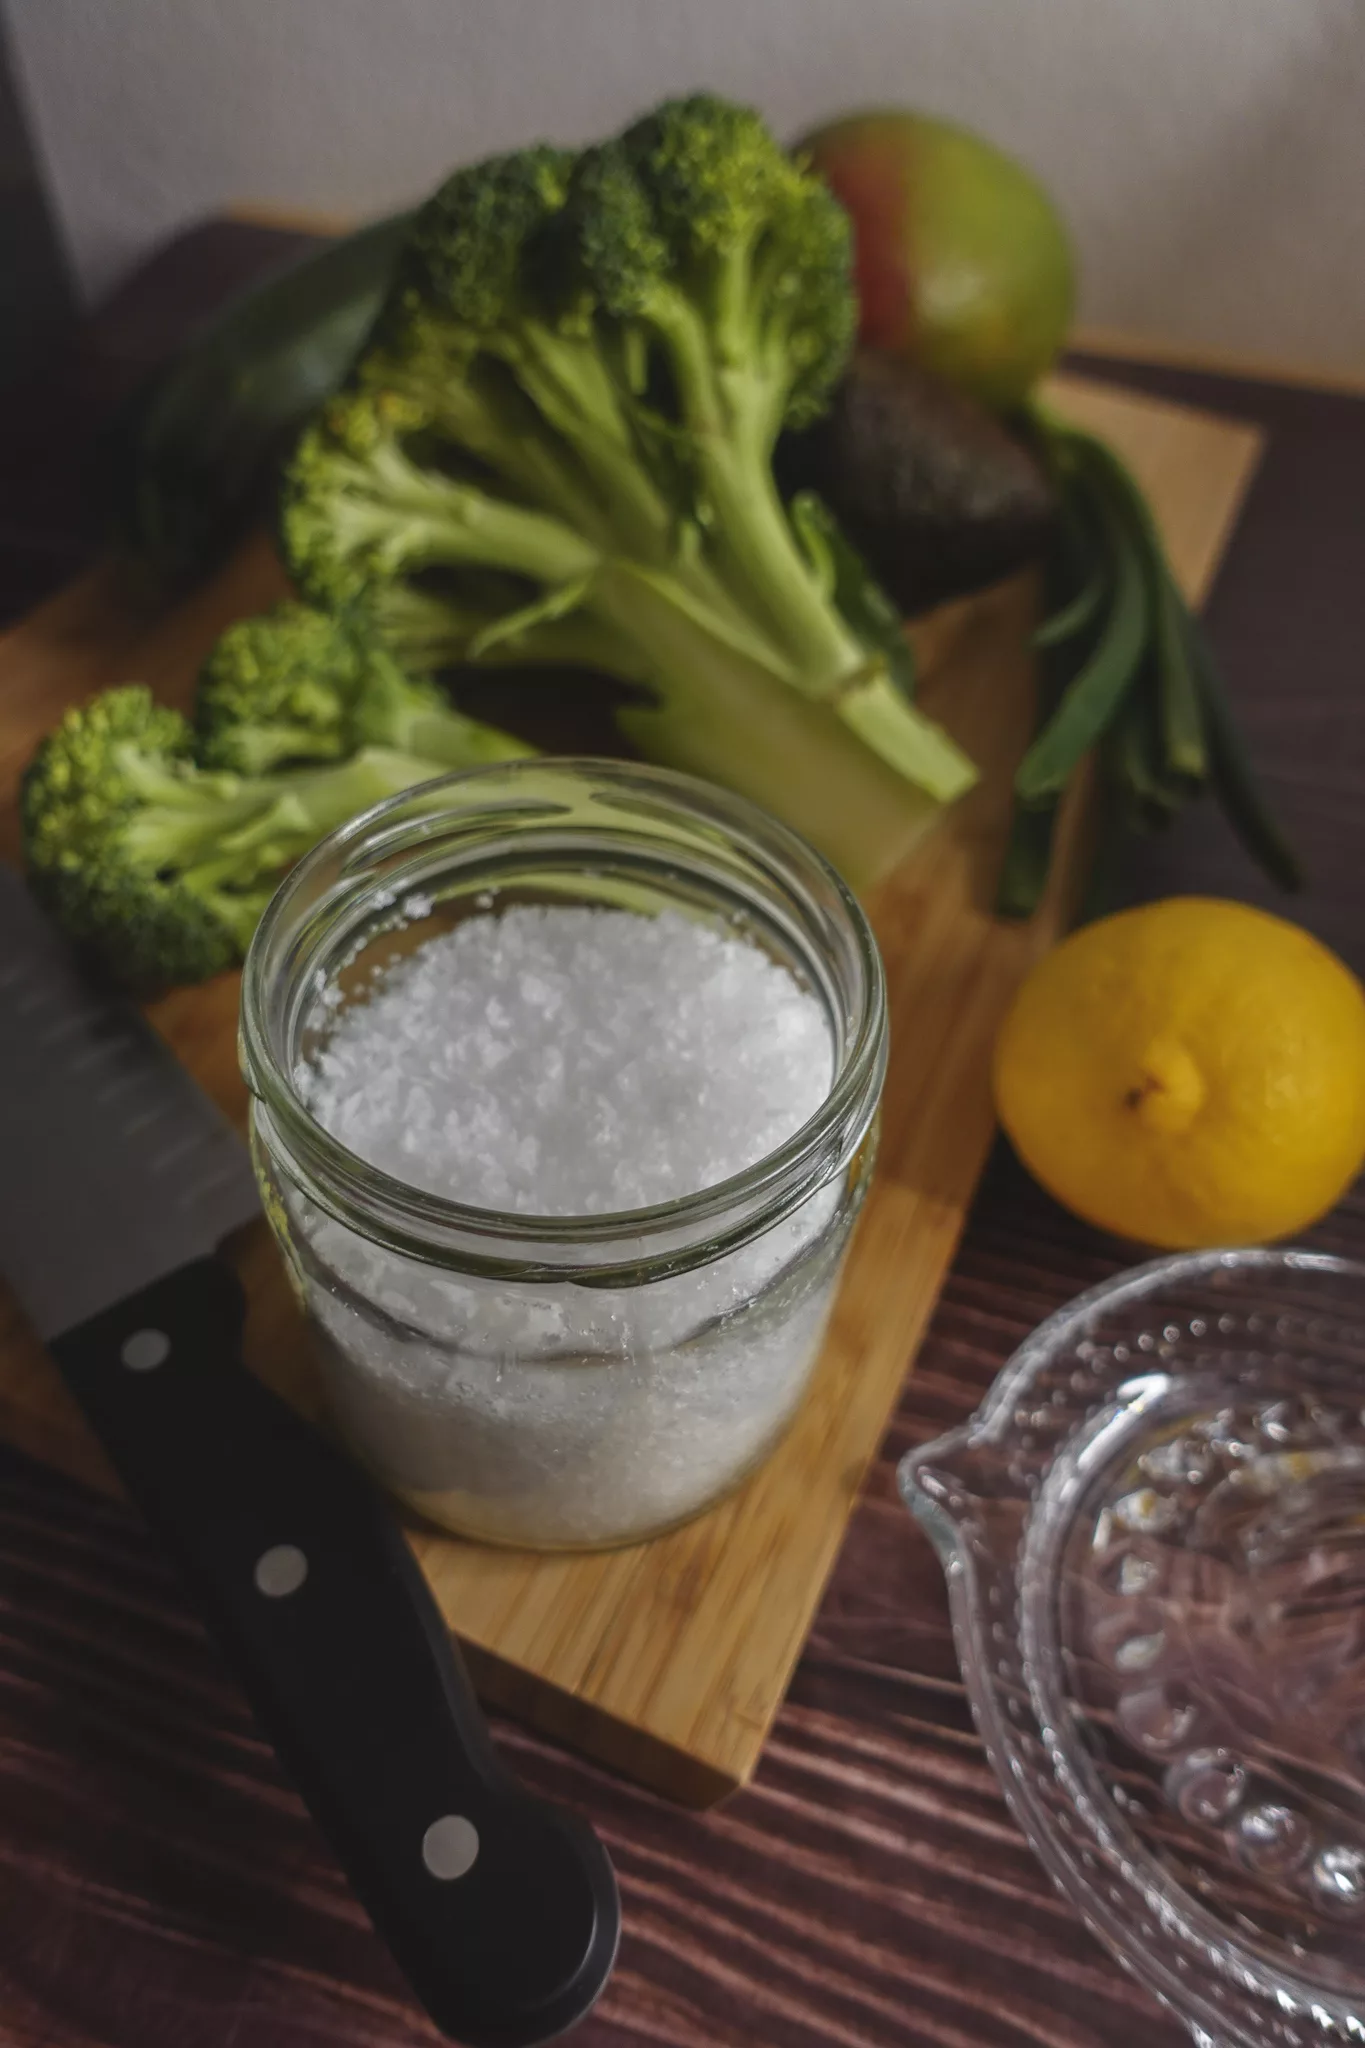 Salz, Zitrone und Brokkoli auf einem Holzschneidebrett. Links vorne liegt ein Messer, rechts vorne eine Zitronenpresse aus Glas.